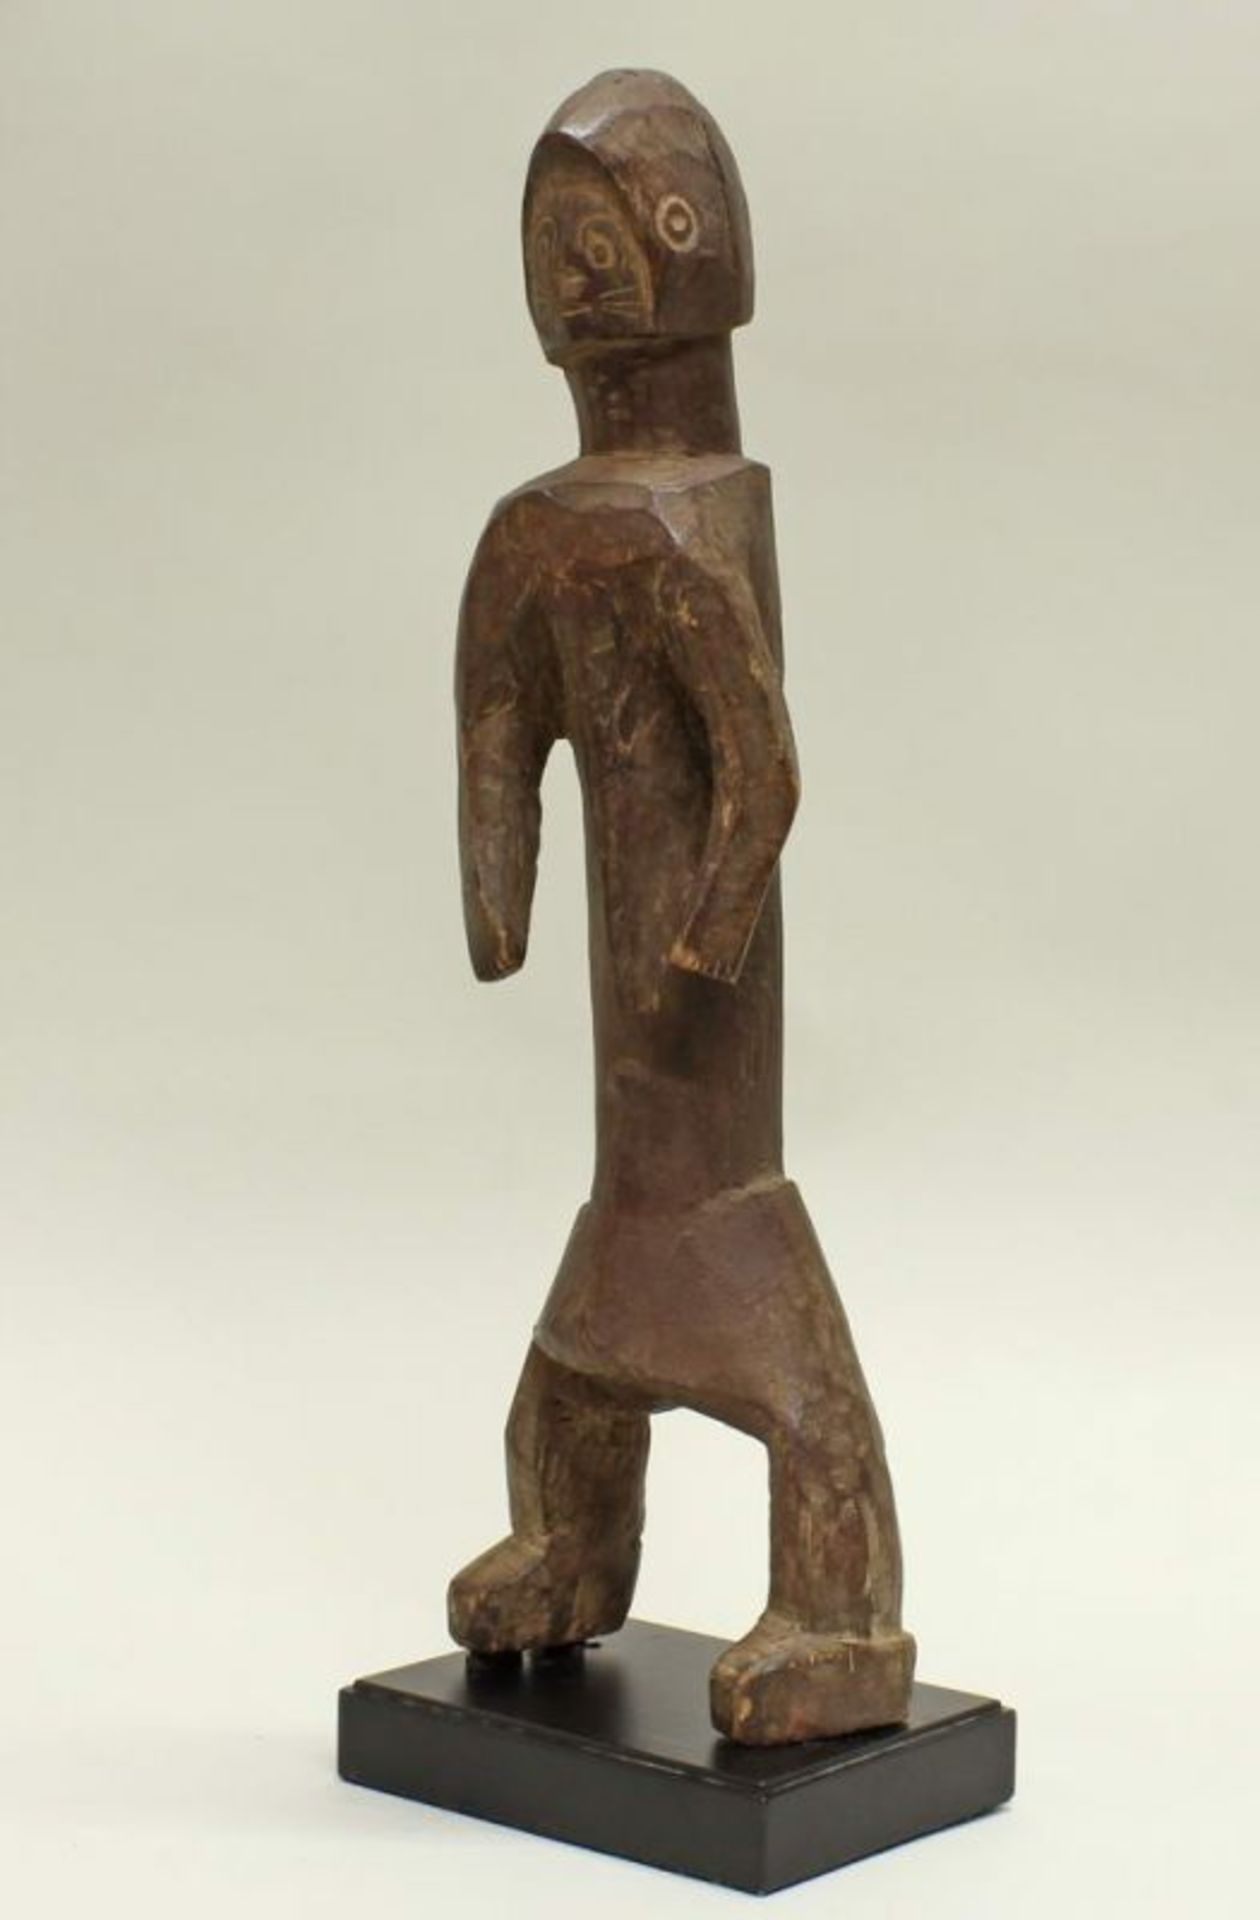 Stehende Figur, Chamba, Nigeria, Afrika, authentisch, Holz, minimalistische Formensprache unter